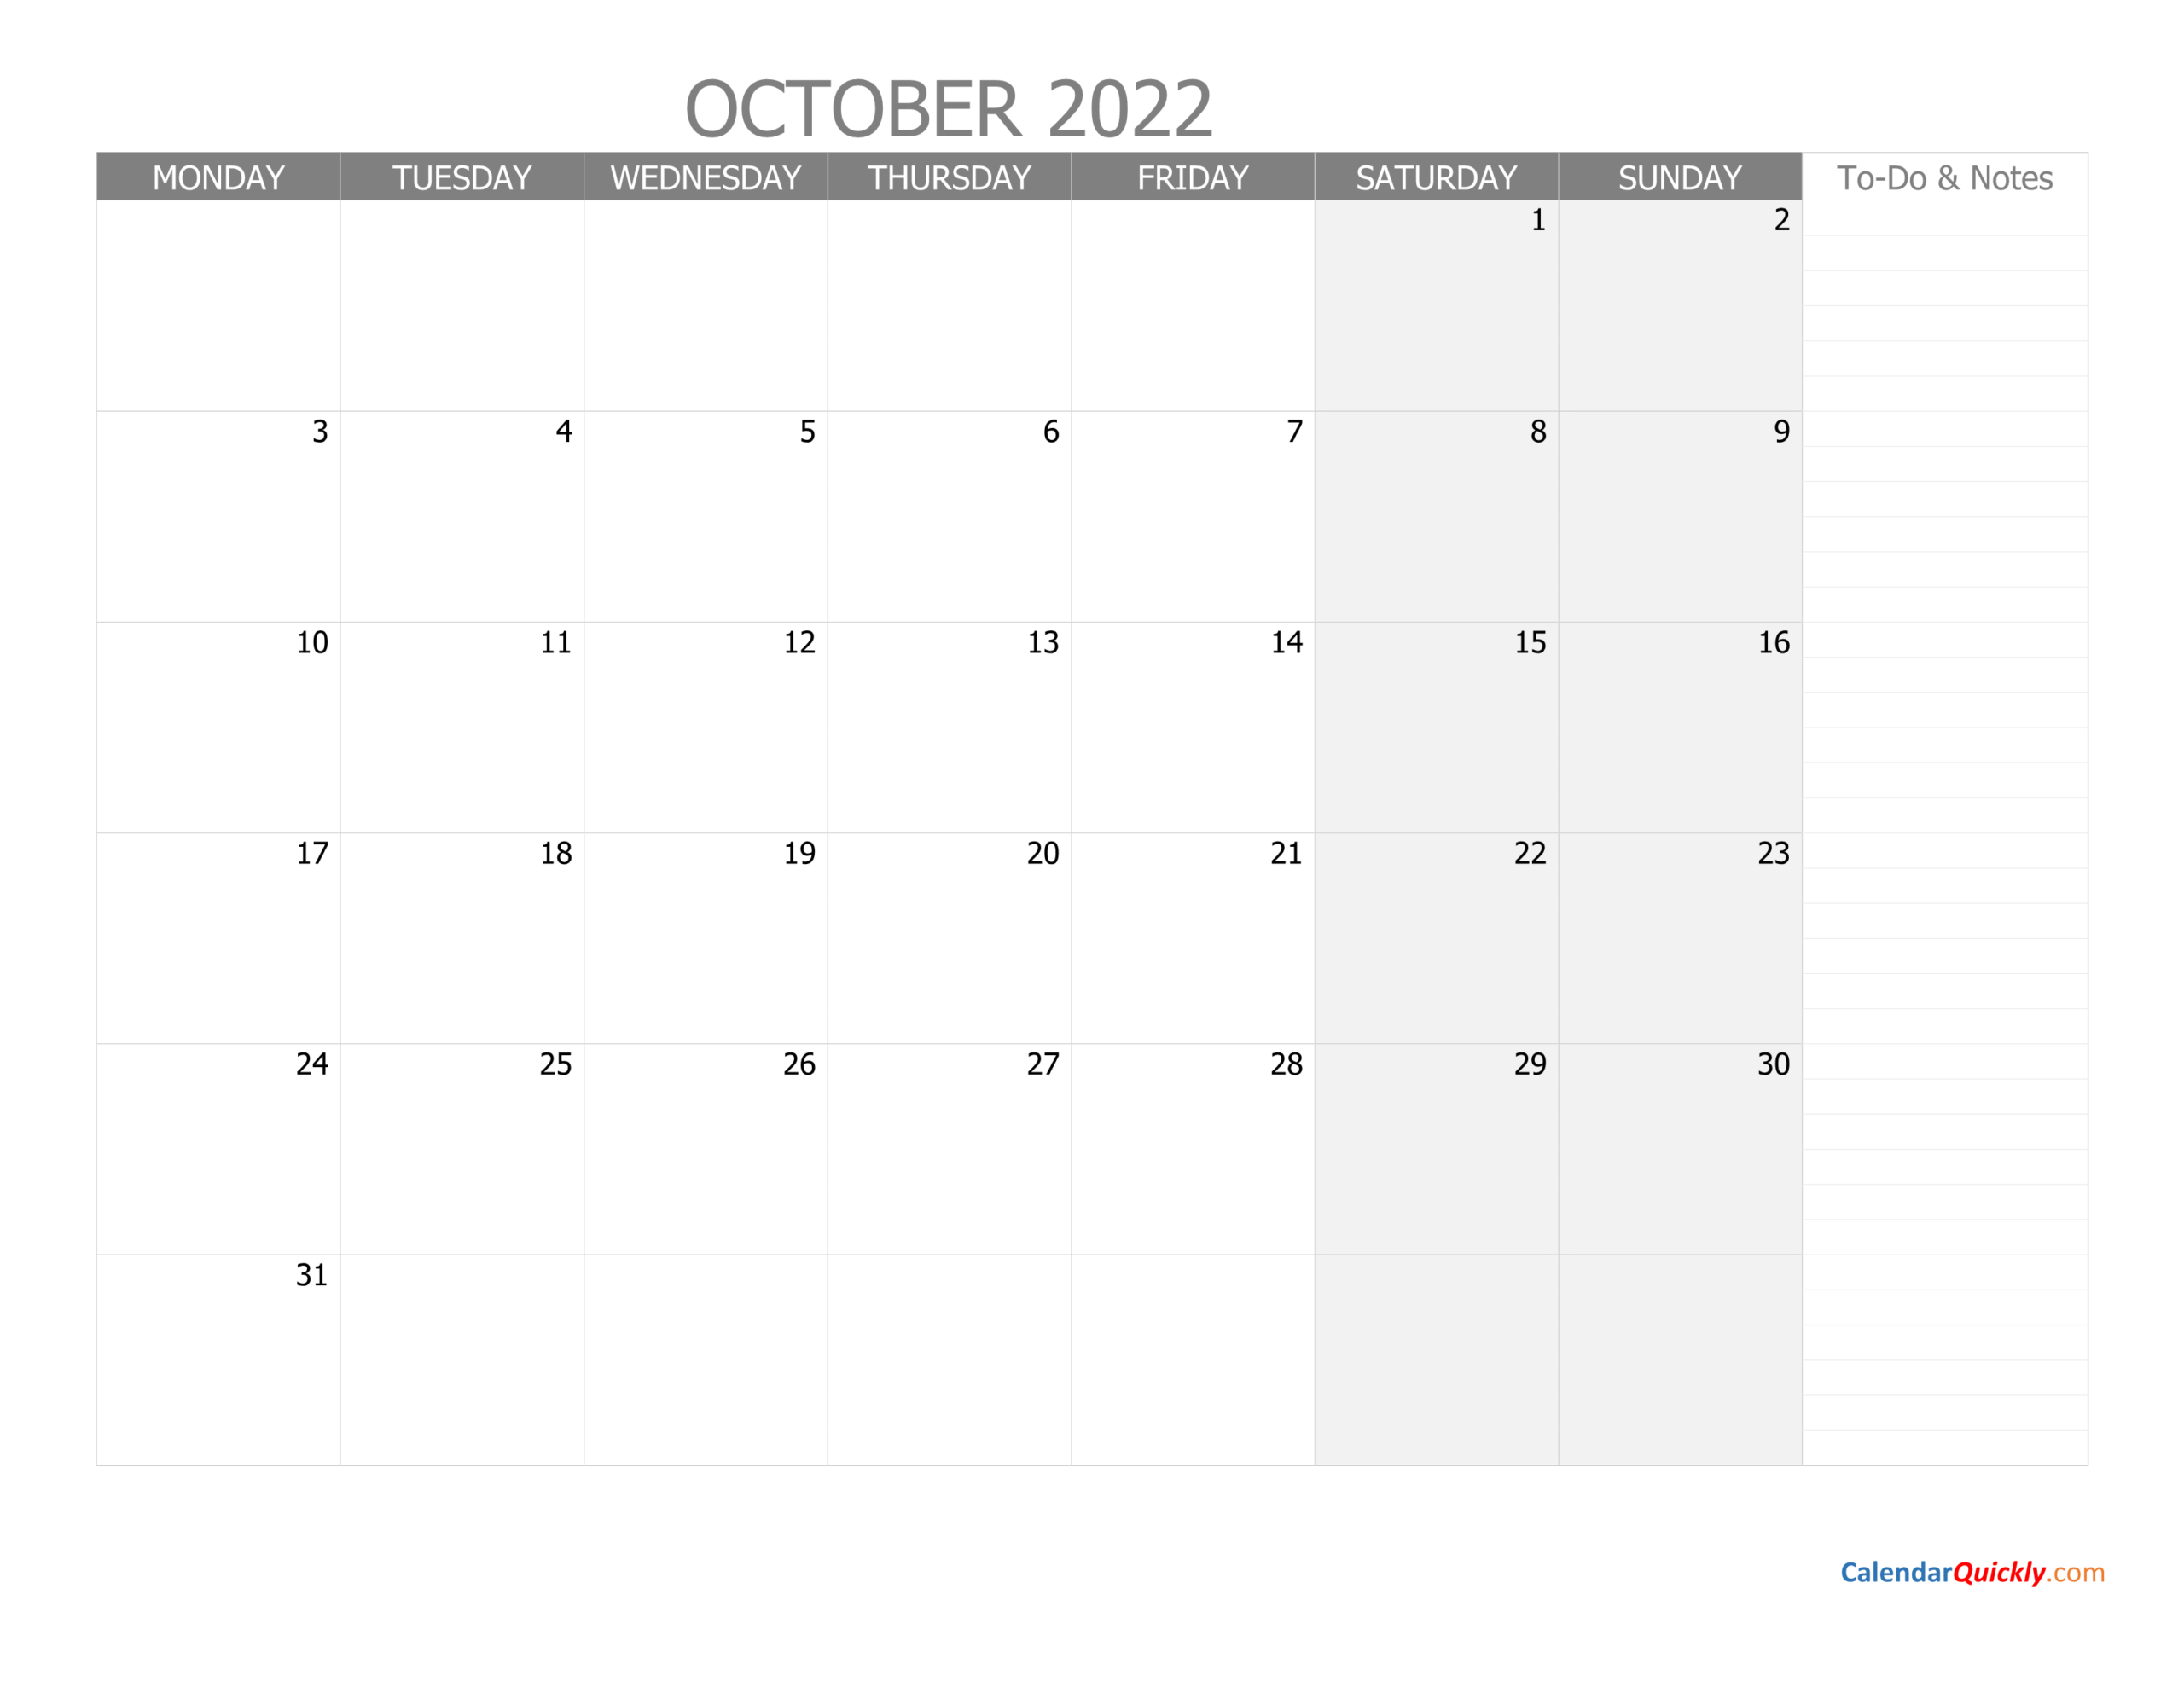 October Monday Calendar 2022 With Notes | Calendar Quickly  Free Printable Calendar 2022 Starting Monday